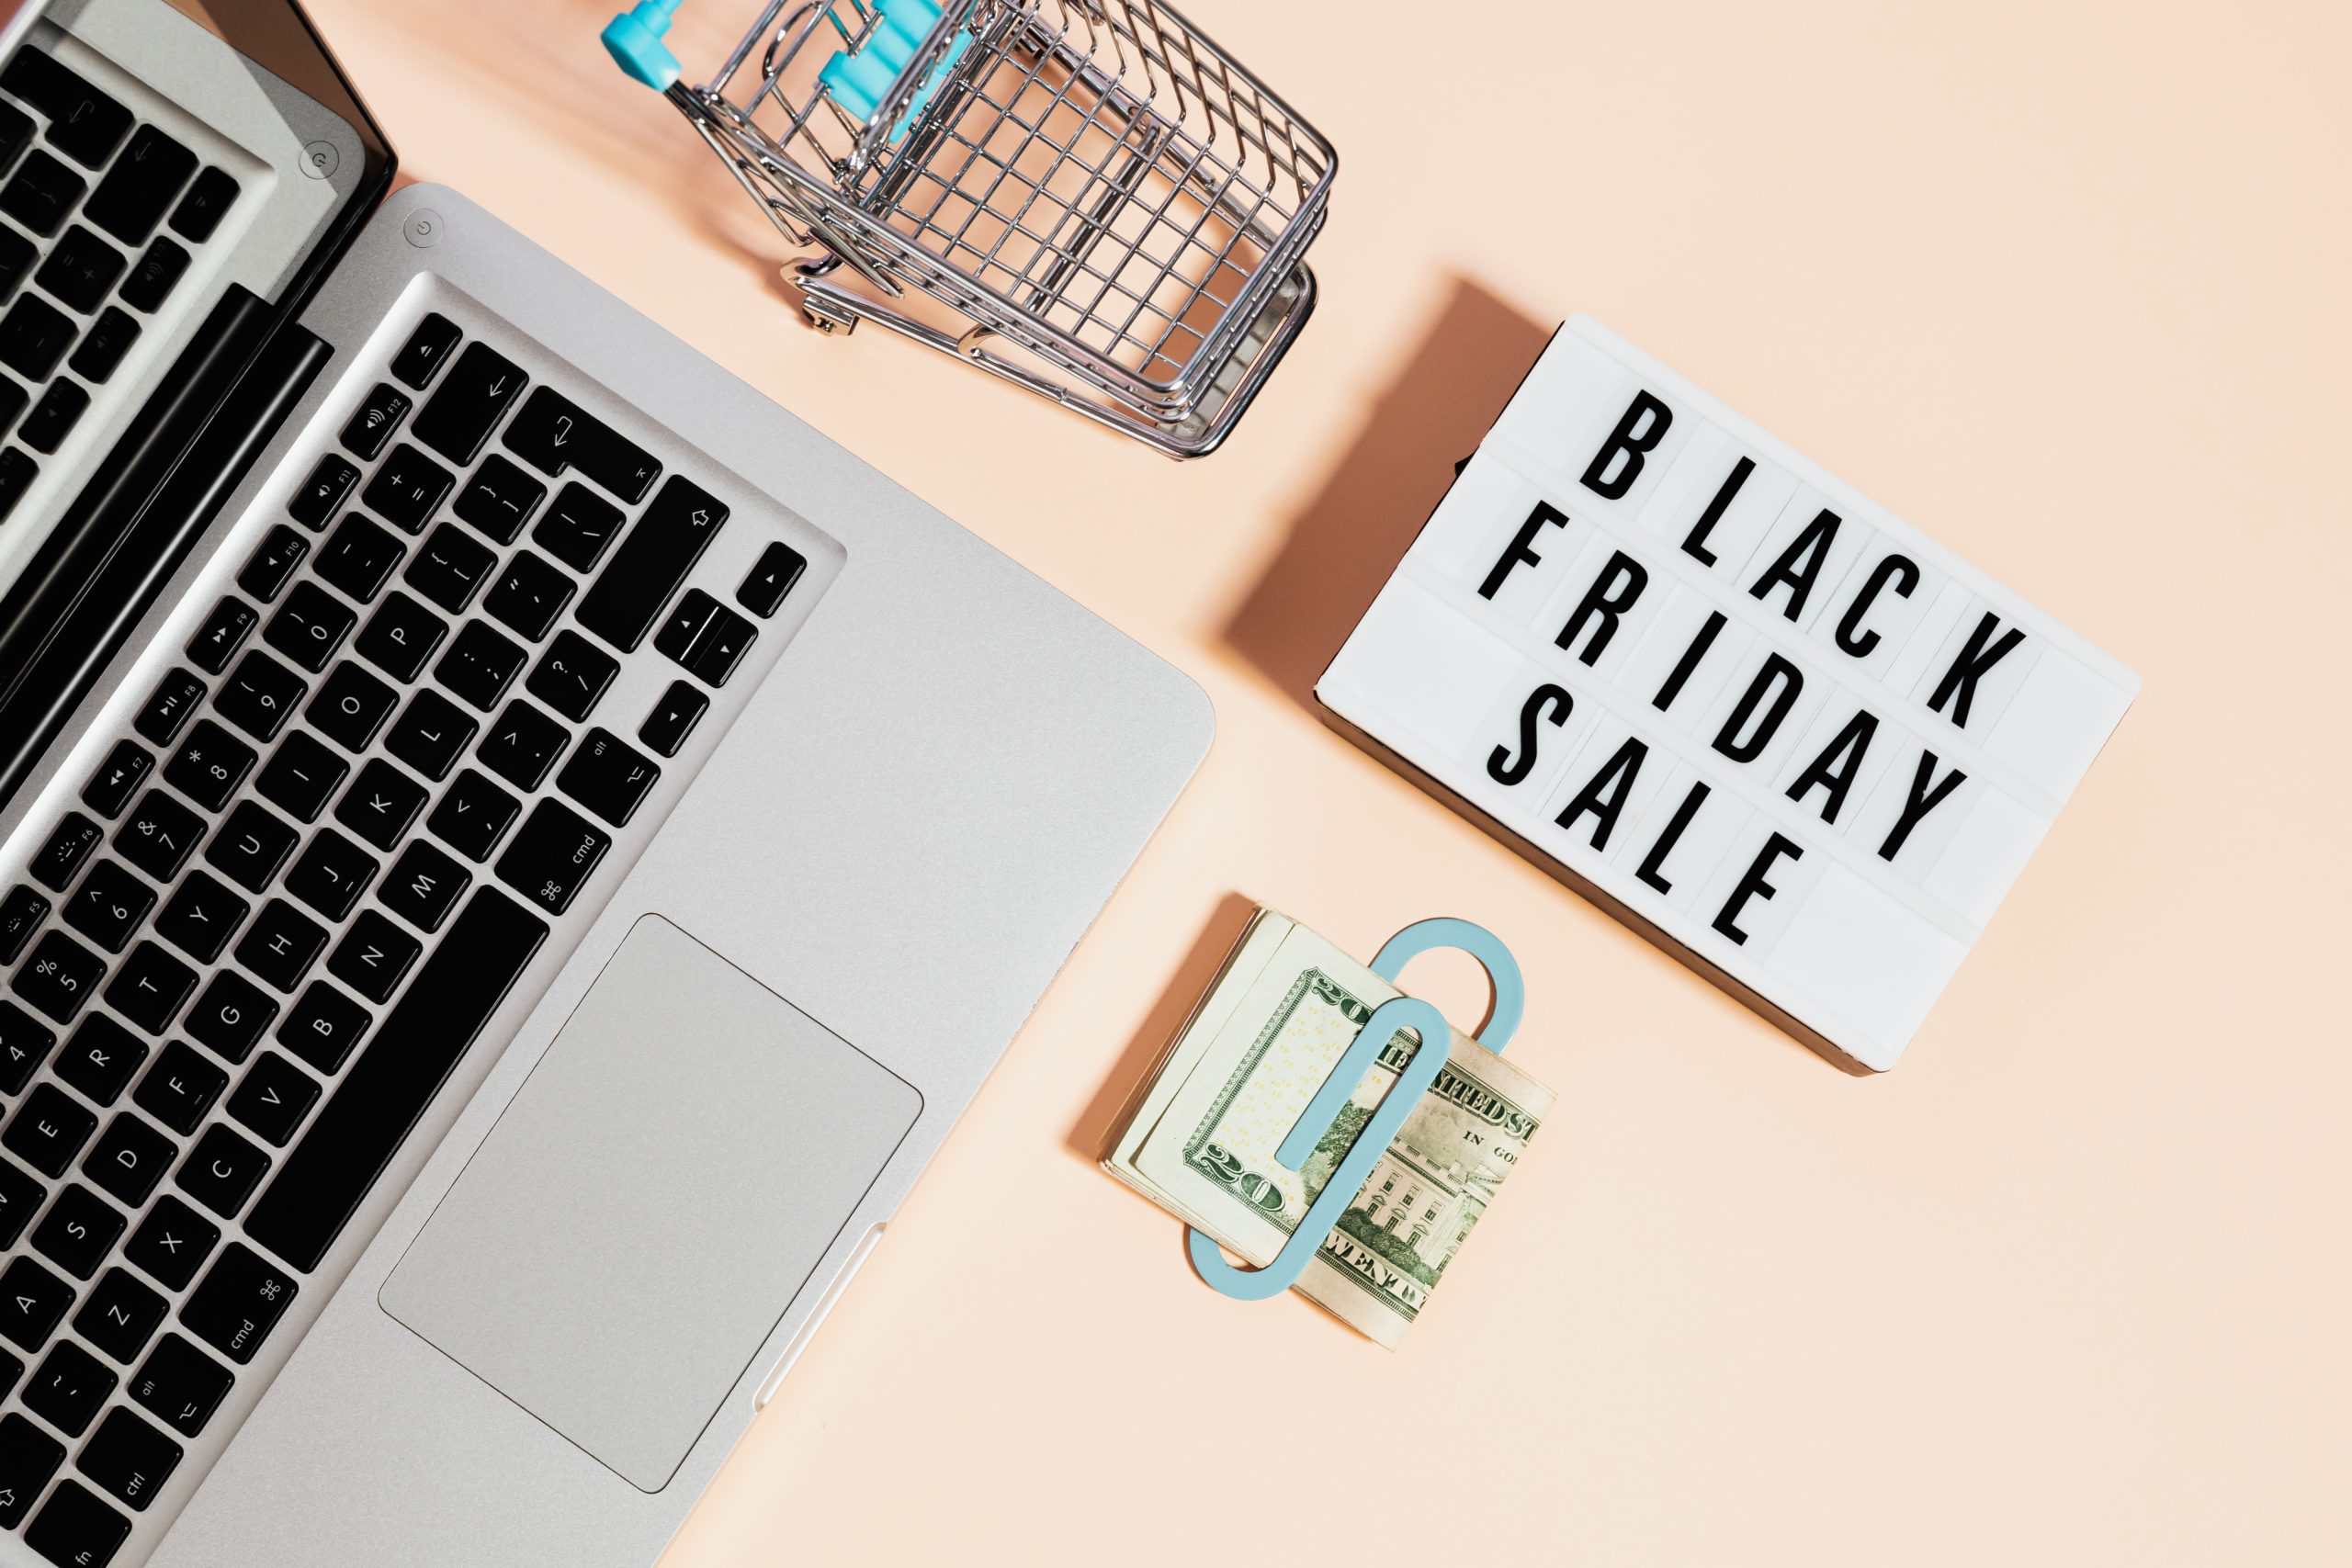 Un MacBook, un caddie miniature, un billet de banque et un message affichant "Black Friday Sale" sur un fond orange clair.